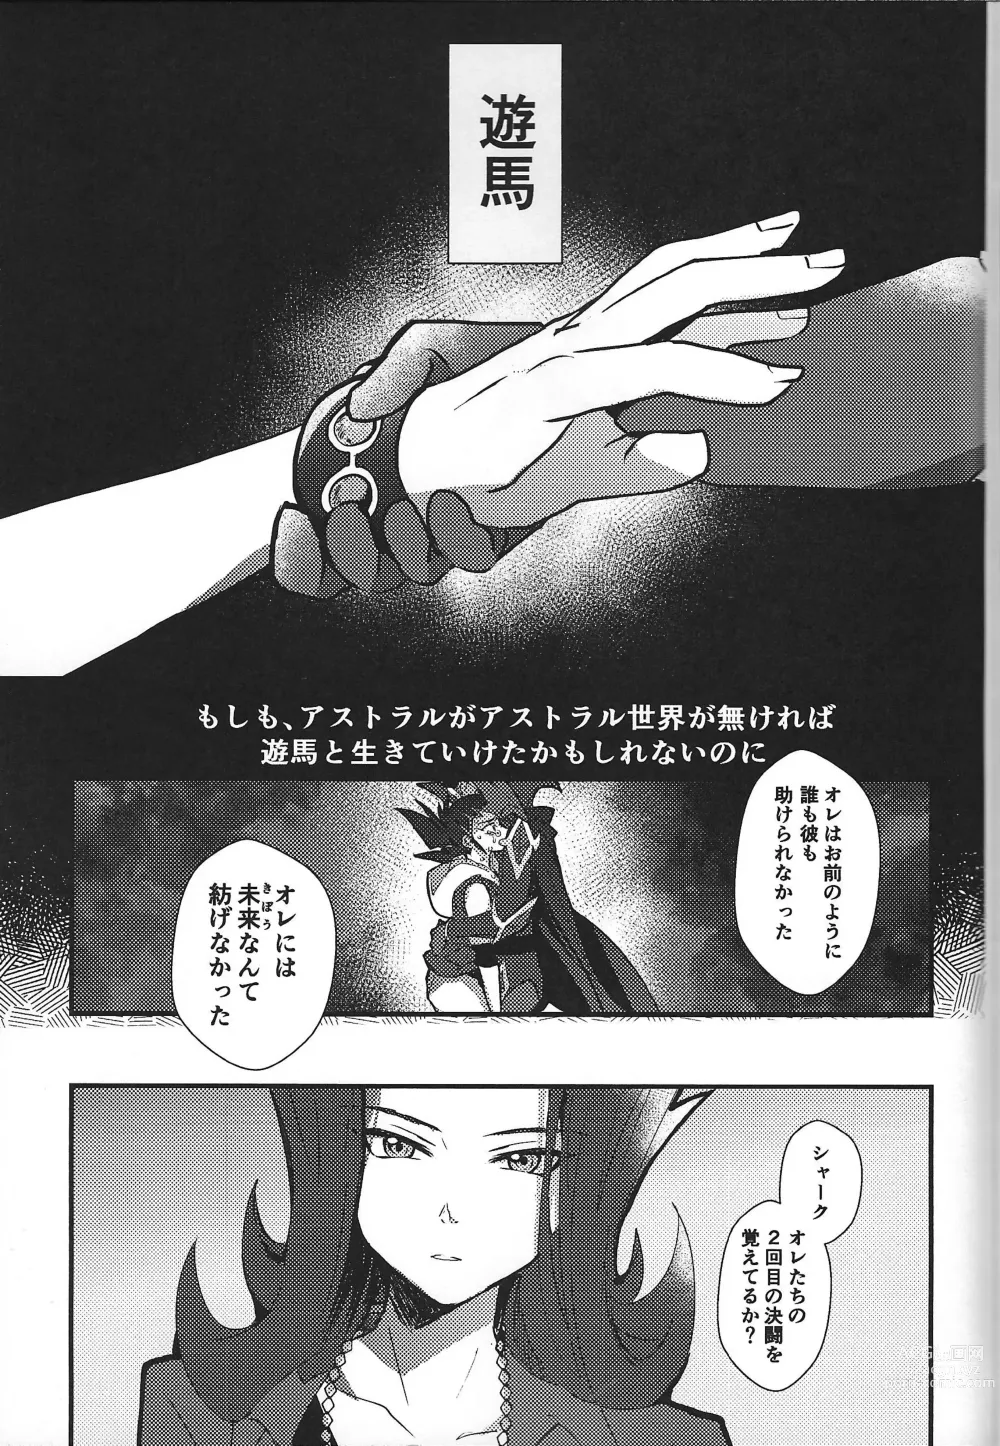 Page 101 of doujinshi ChaosPhantasma